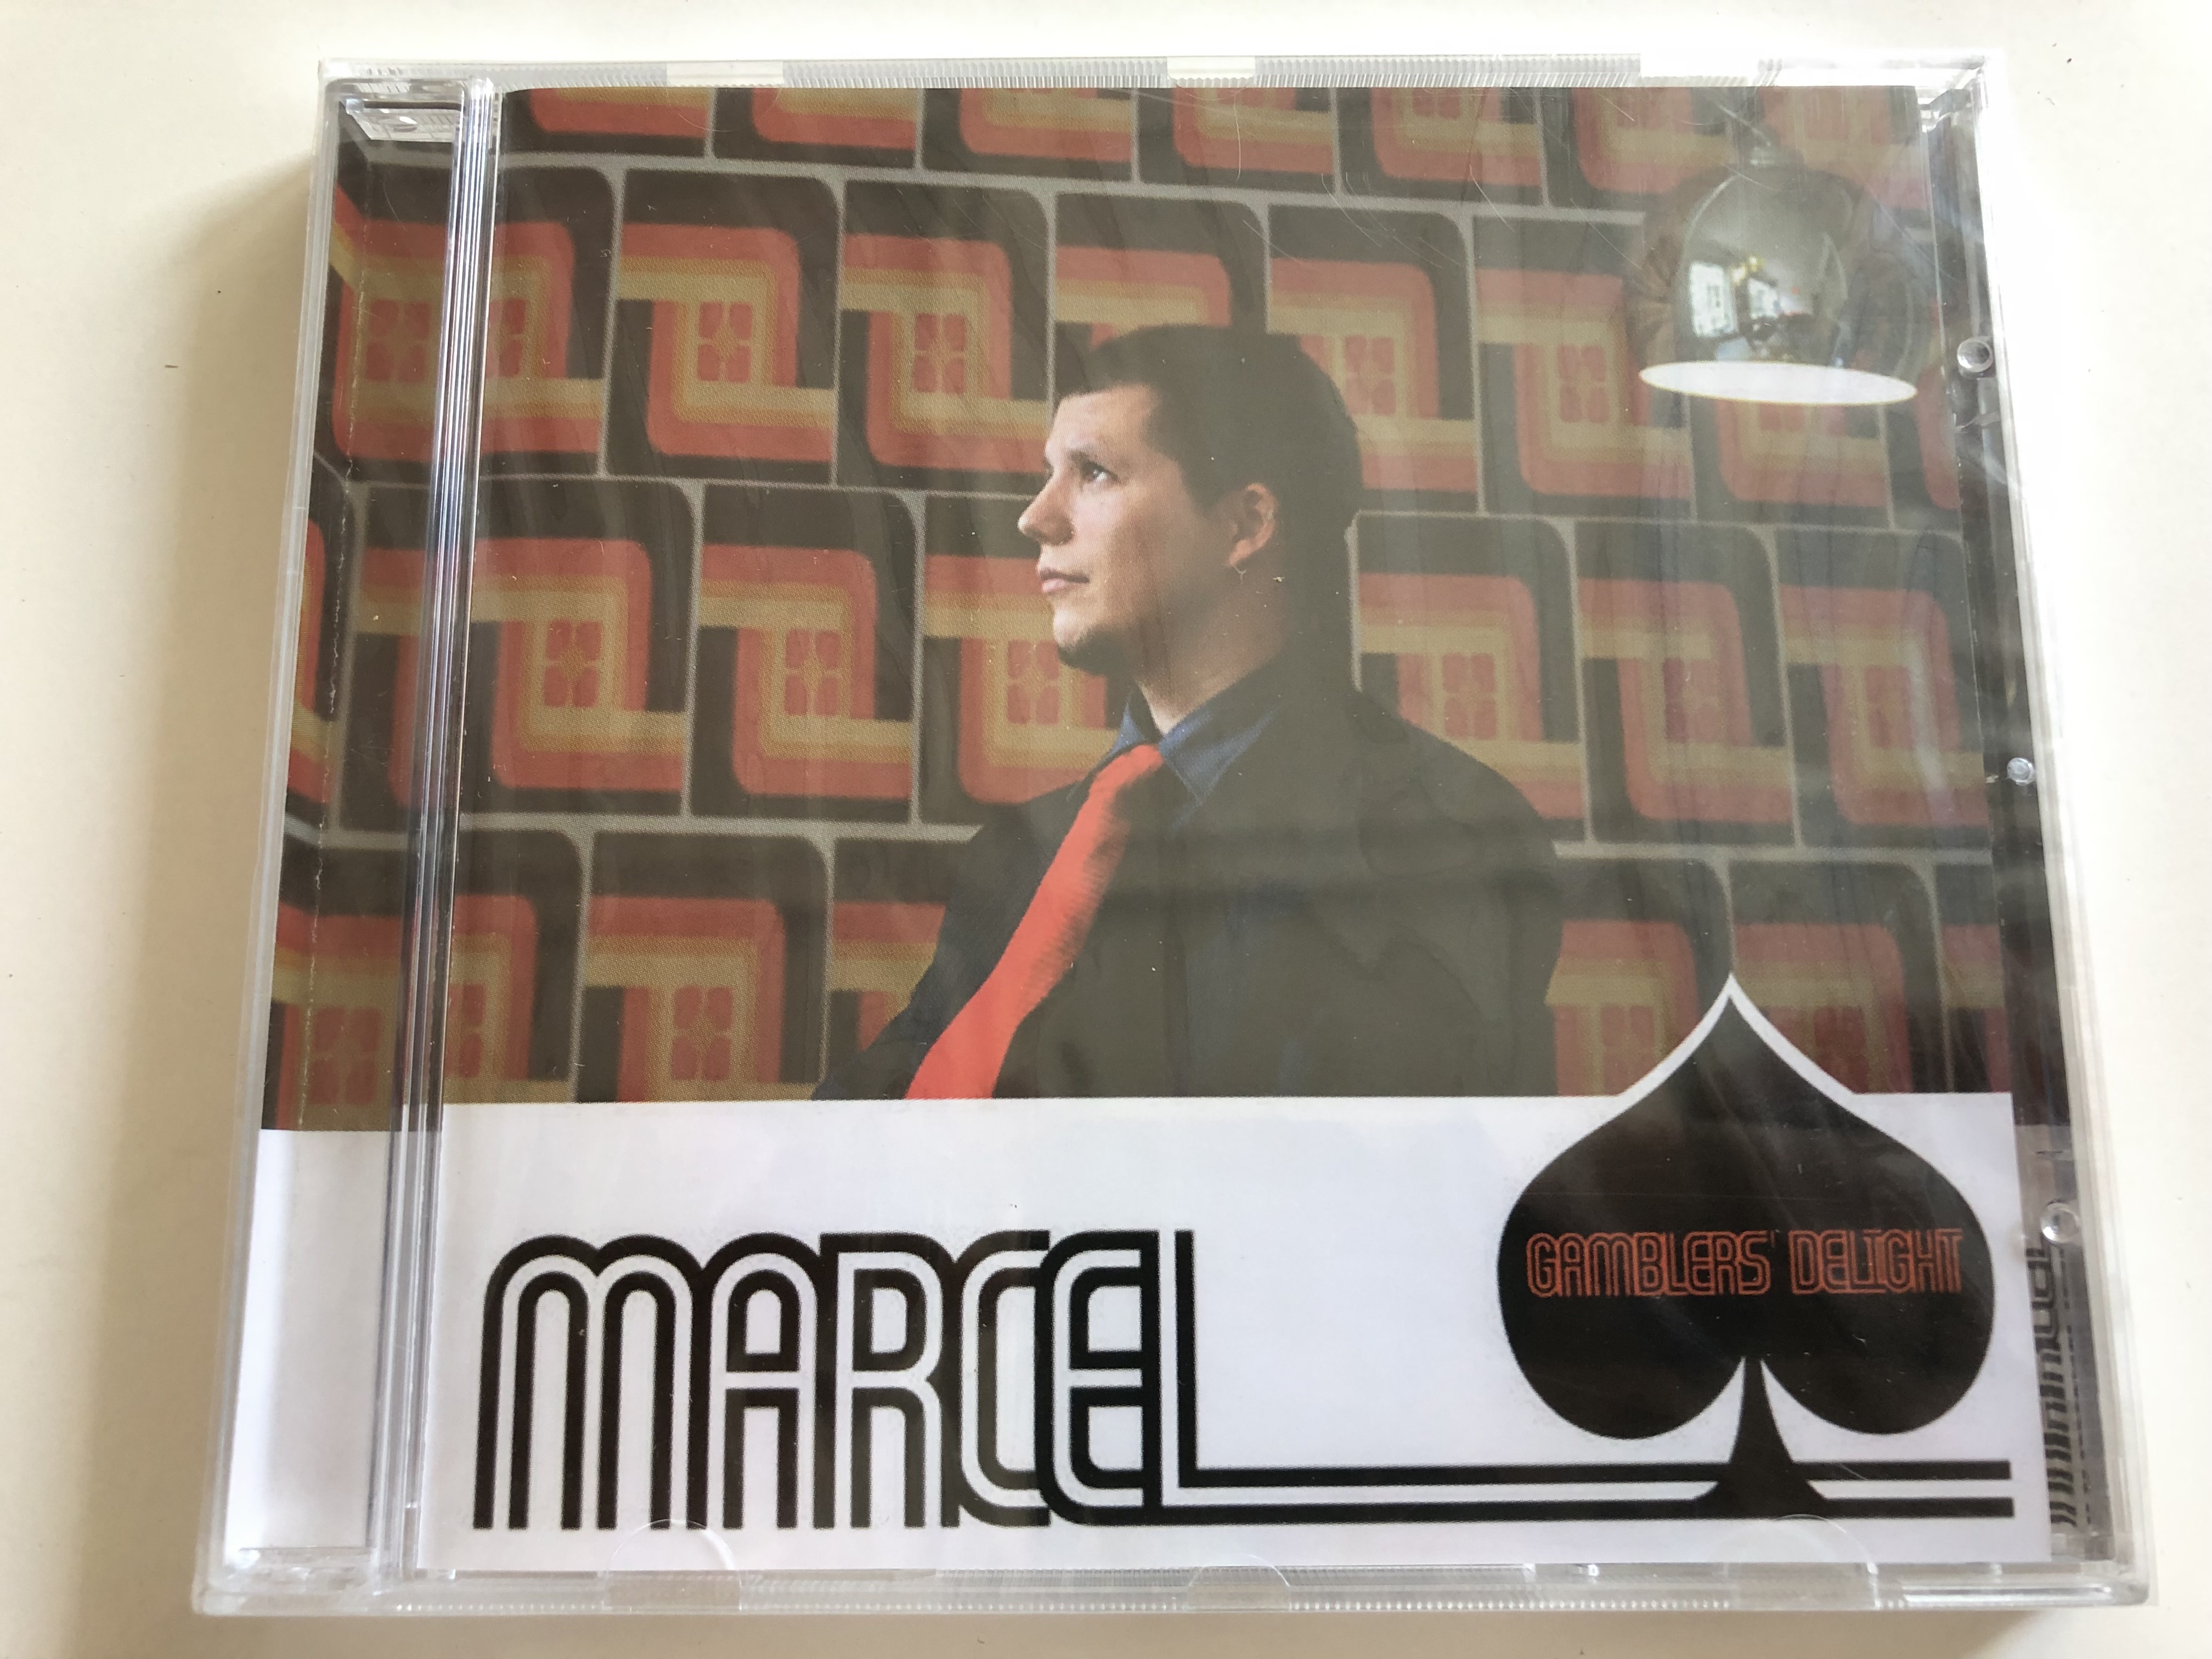 marcel-gamblers-delight-cookin-records-audio-cd-2005-ckma002-2-1-.jpg